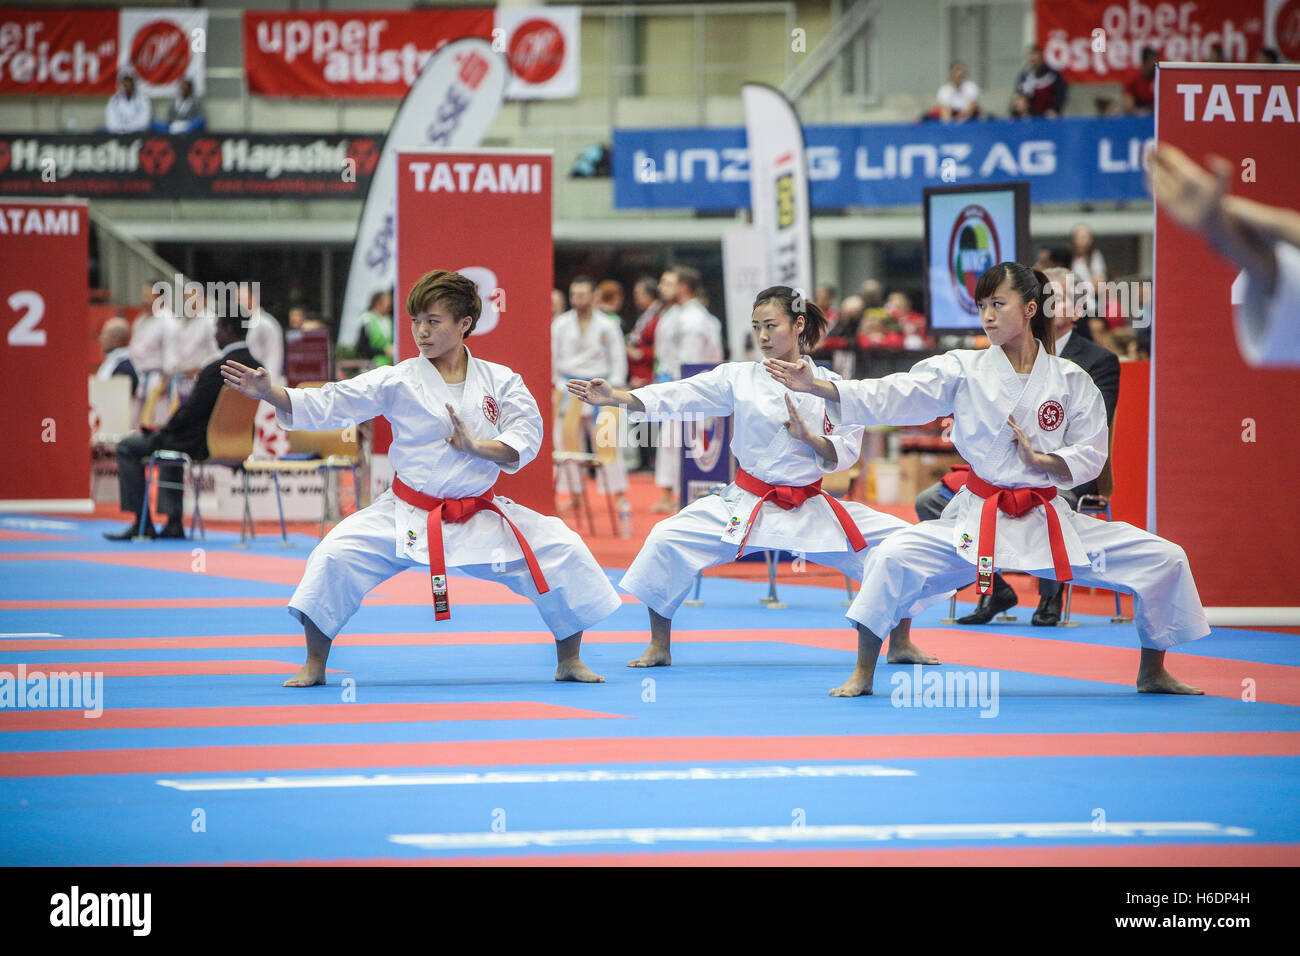 Linz, Autriche. 27, octobre 2016. Championnat du monde kata équipe, karaté WKF : Jan de Wild Photography / Alamy Live News Banque D'Images